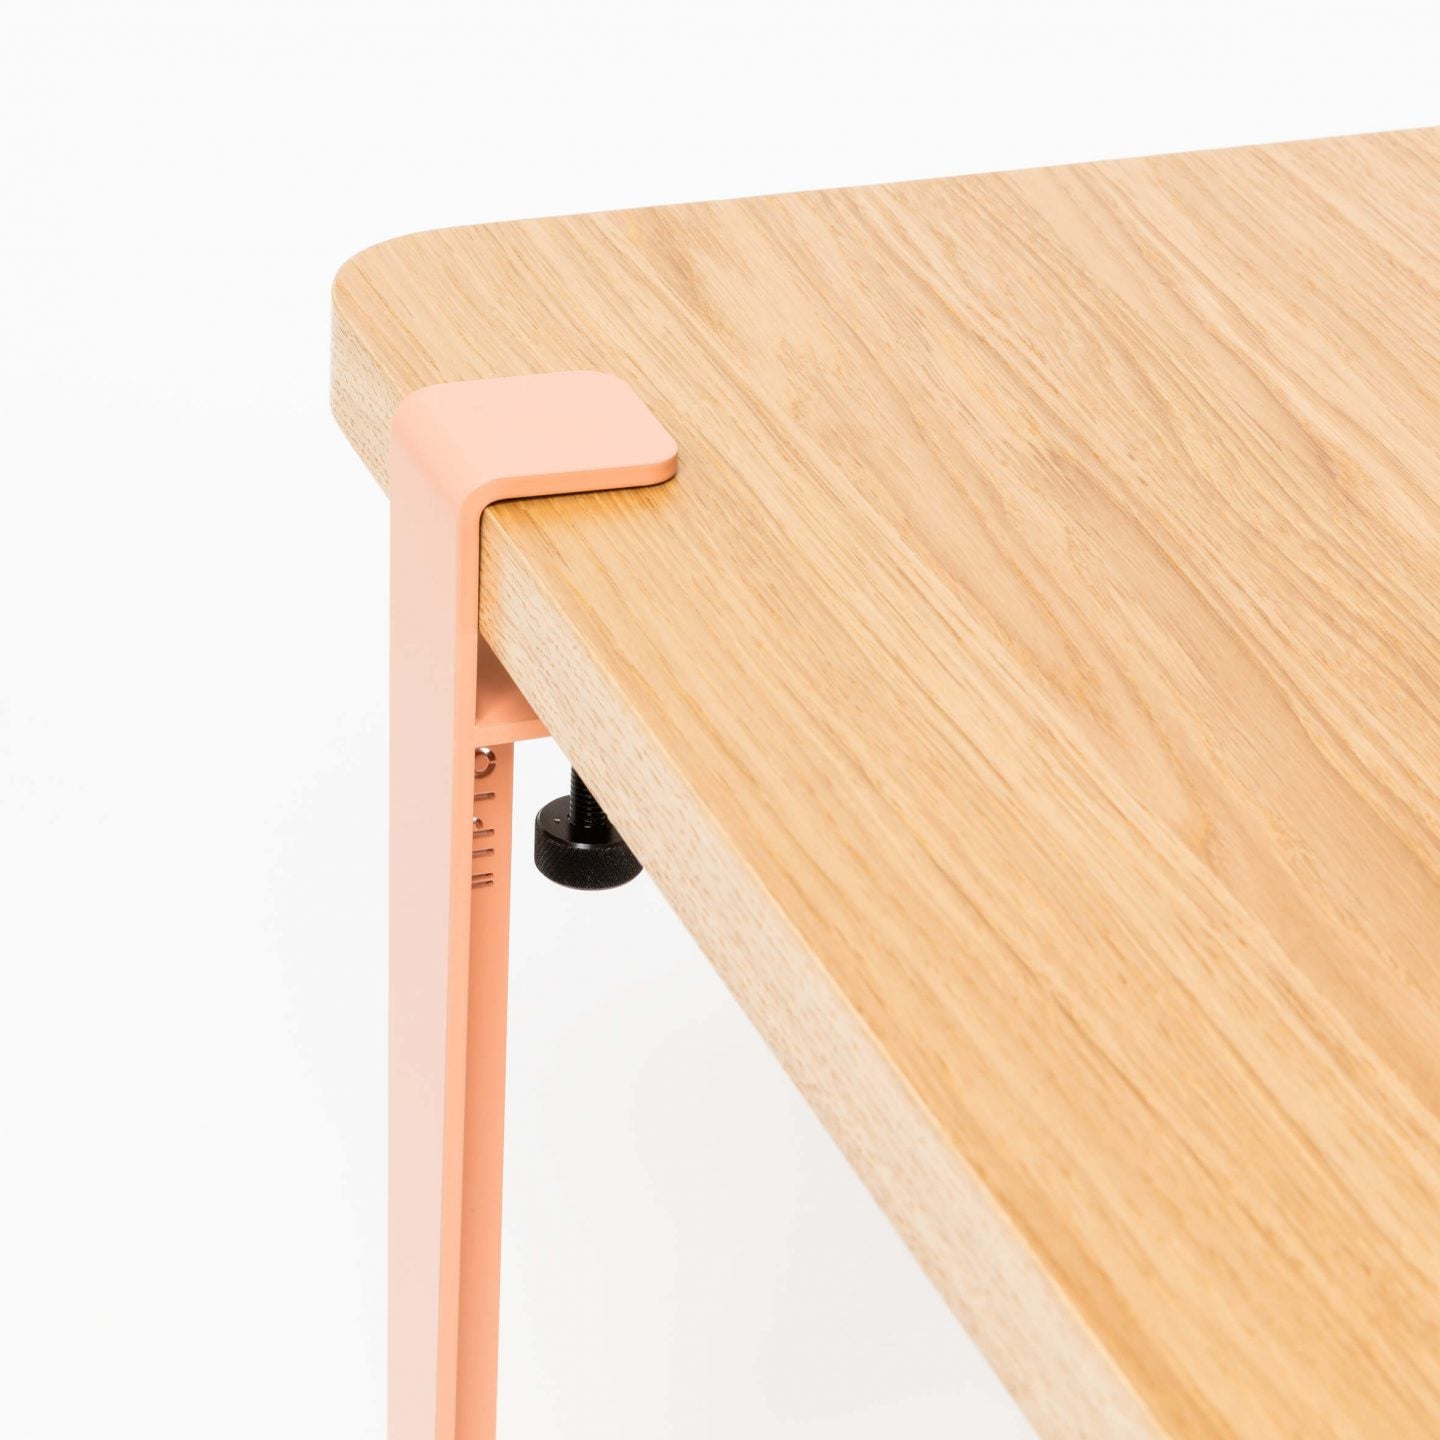 Pied design pour créer votre table basse ou votre banc - H43cm